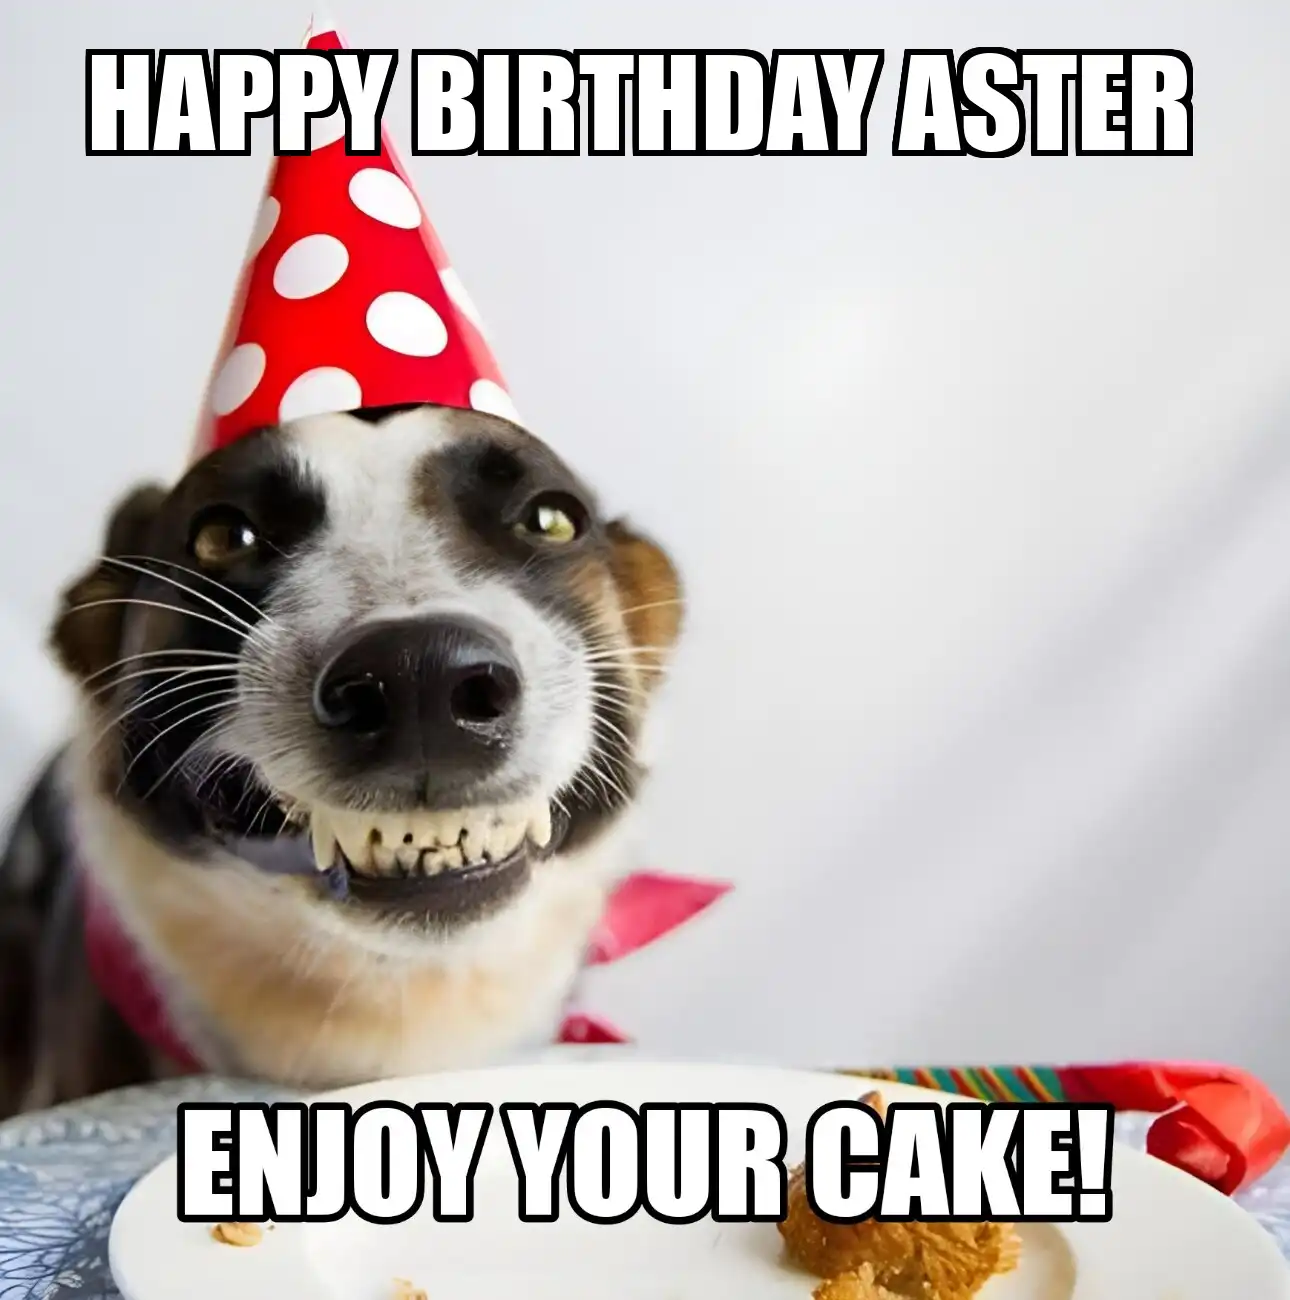 Happy Birthday Aster Enjoy Your Cake Dog Meme